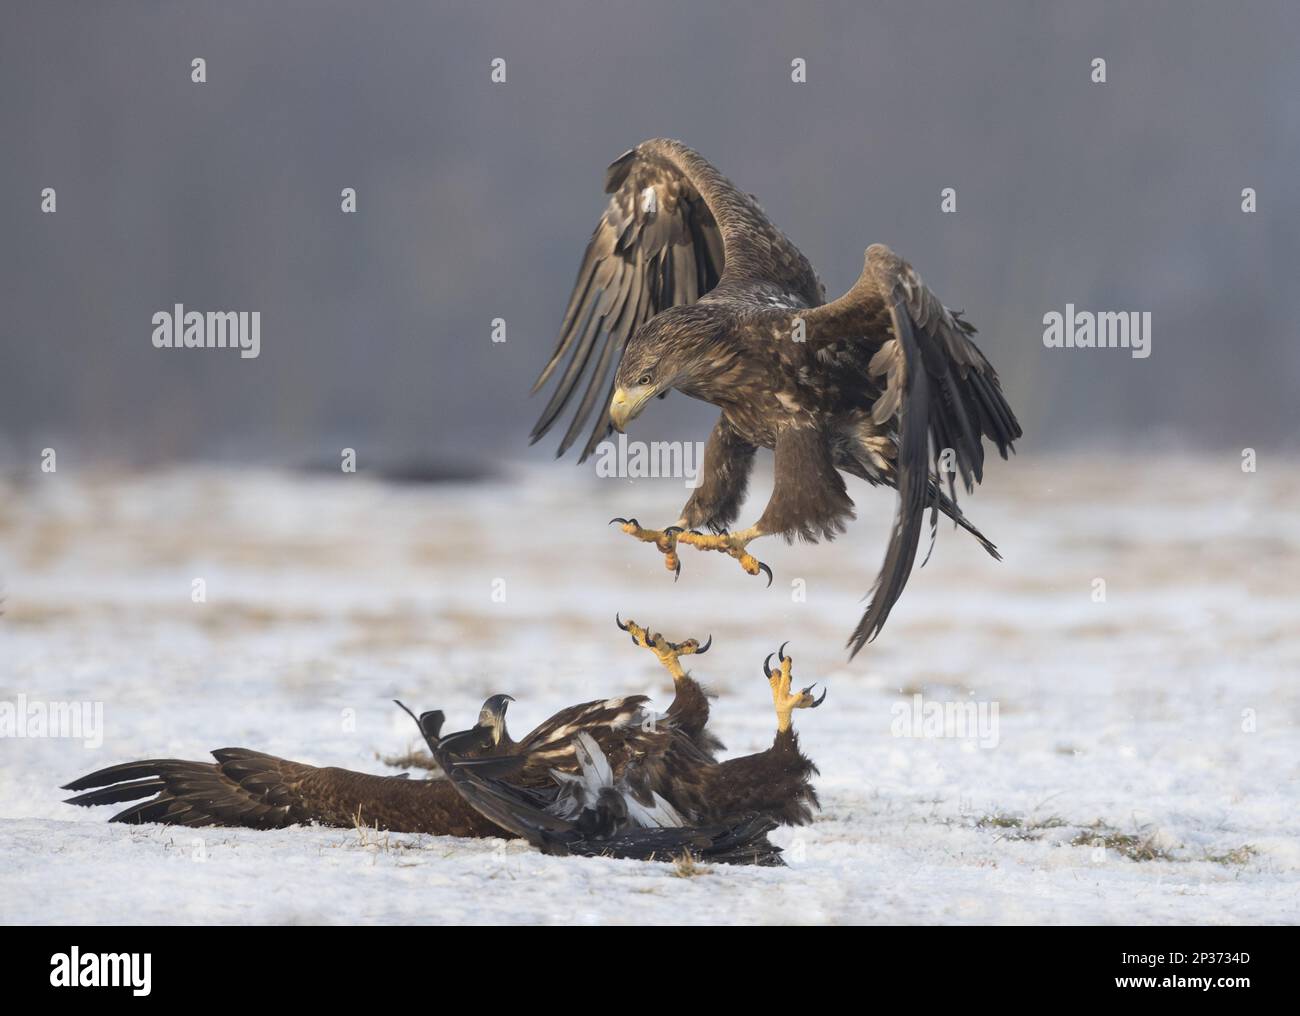 White-tailed eagle (Haliaeetus albicilla) two immatures, struggling on snow, Poland Stock Photo